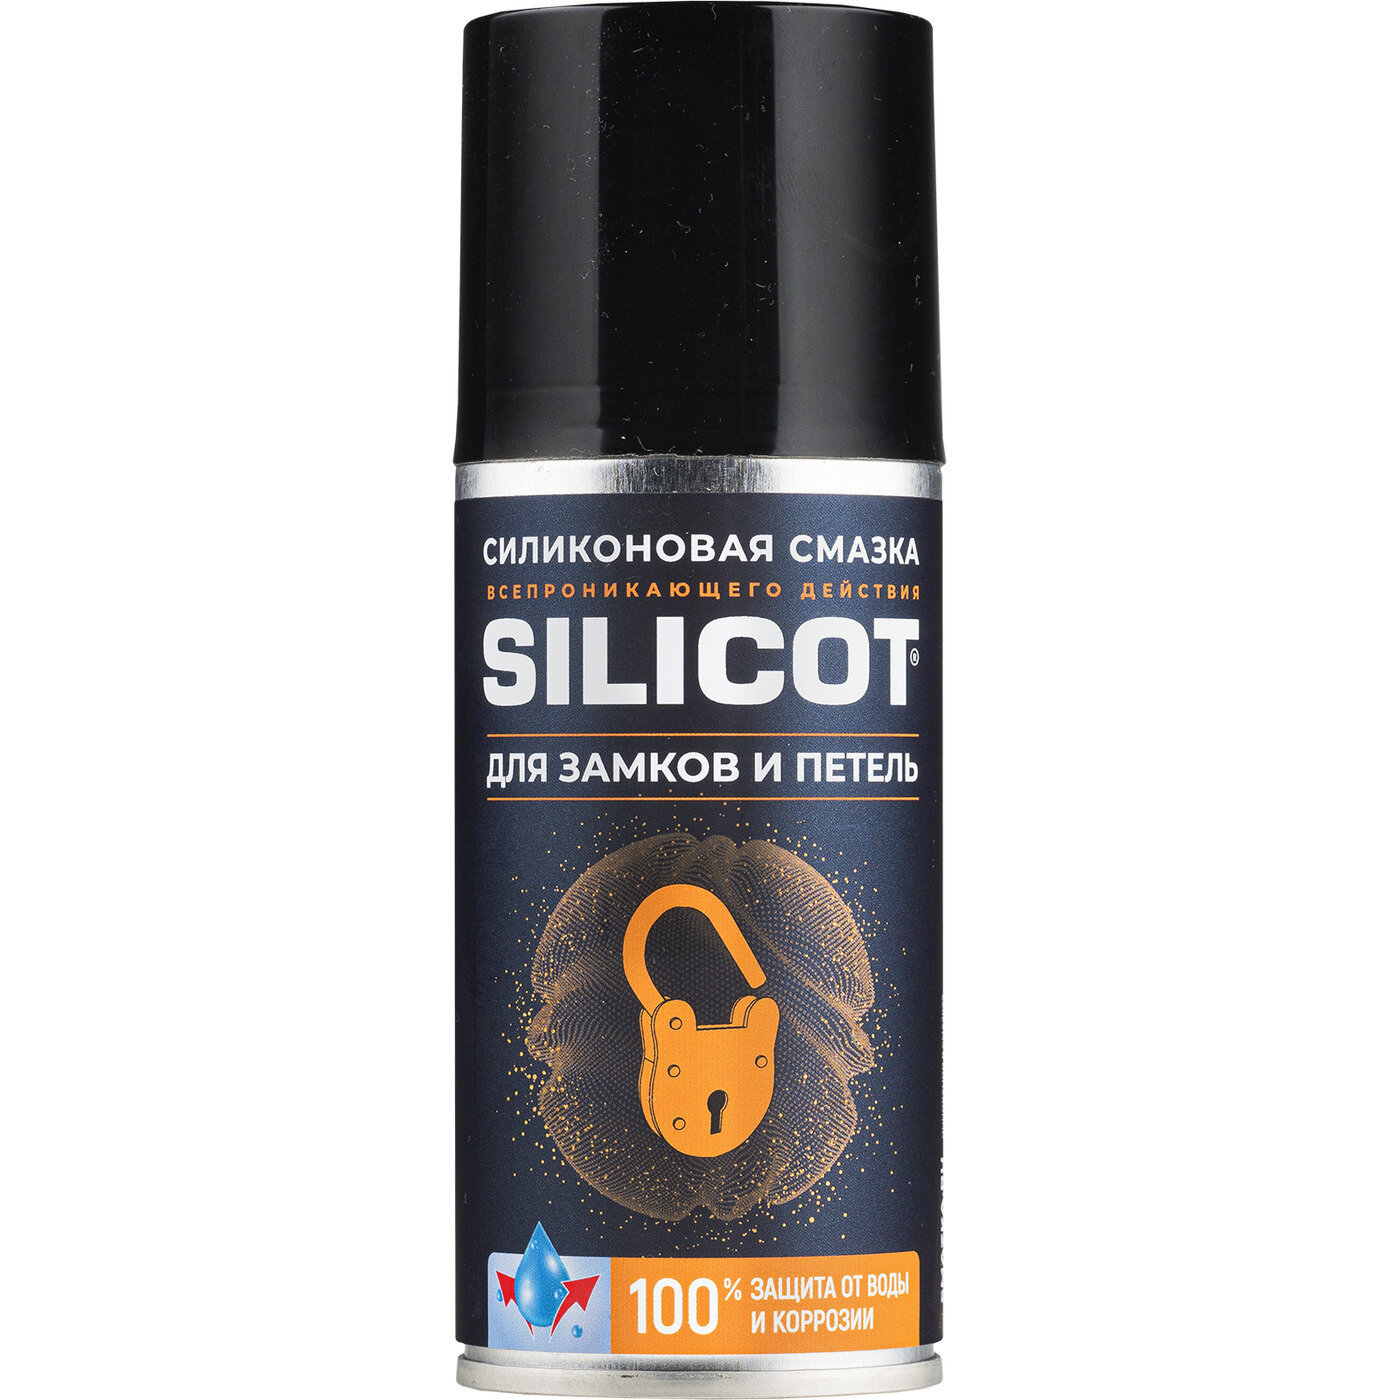 ВМПАВТО. Смазка Silicot Spray для замков и петель 150мл флакон аэрозоль. 2708